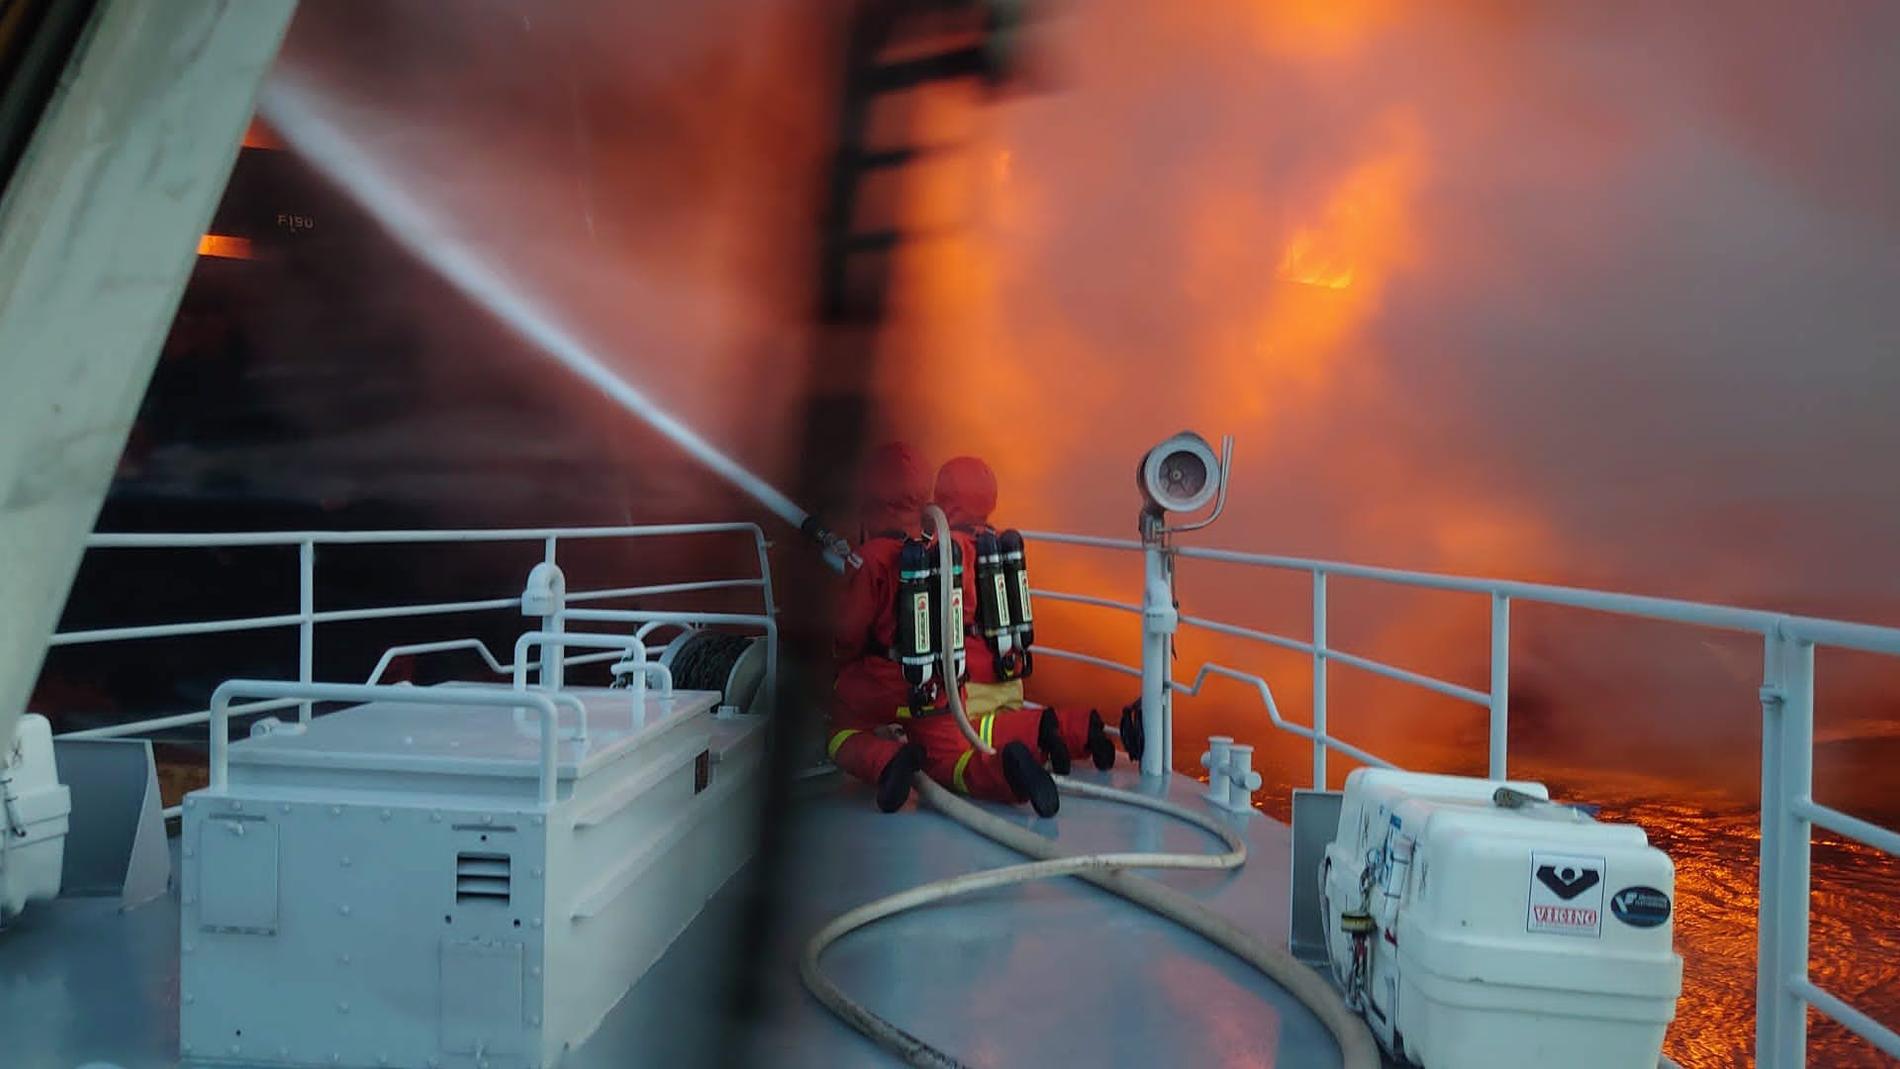 Det svåra och komplicerade släckningsarbetet av branden på fartyget fortsätter.